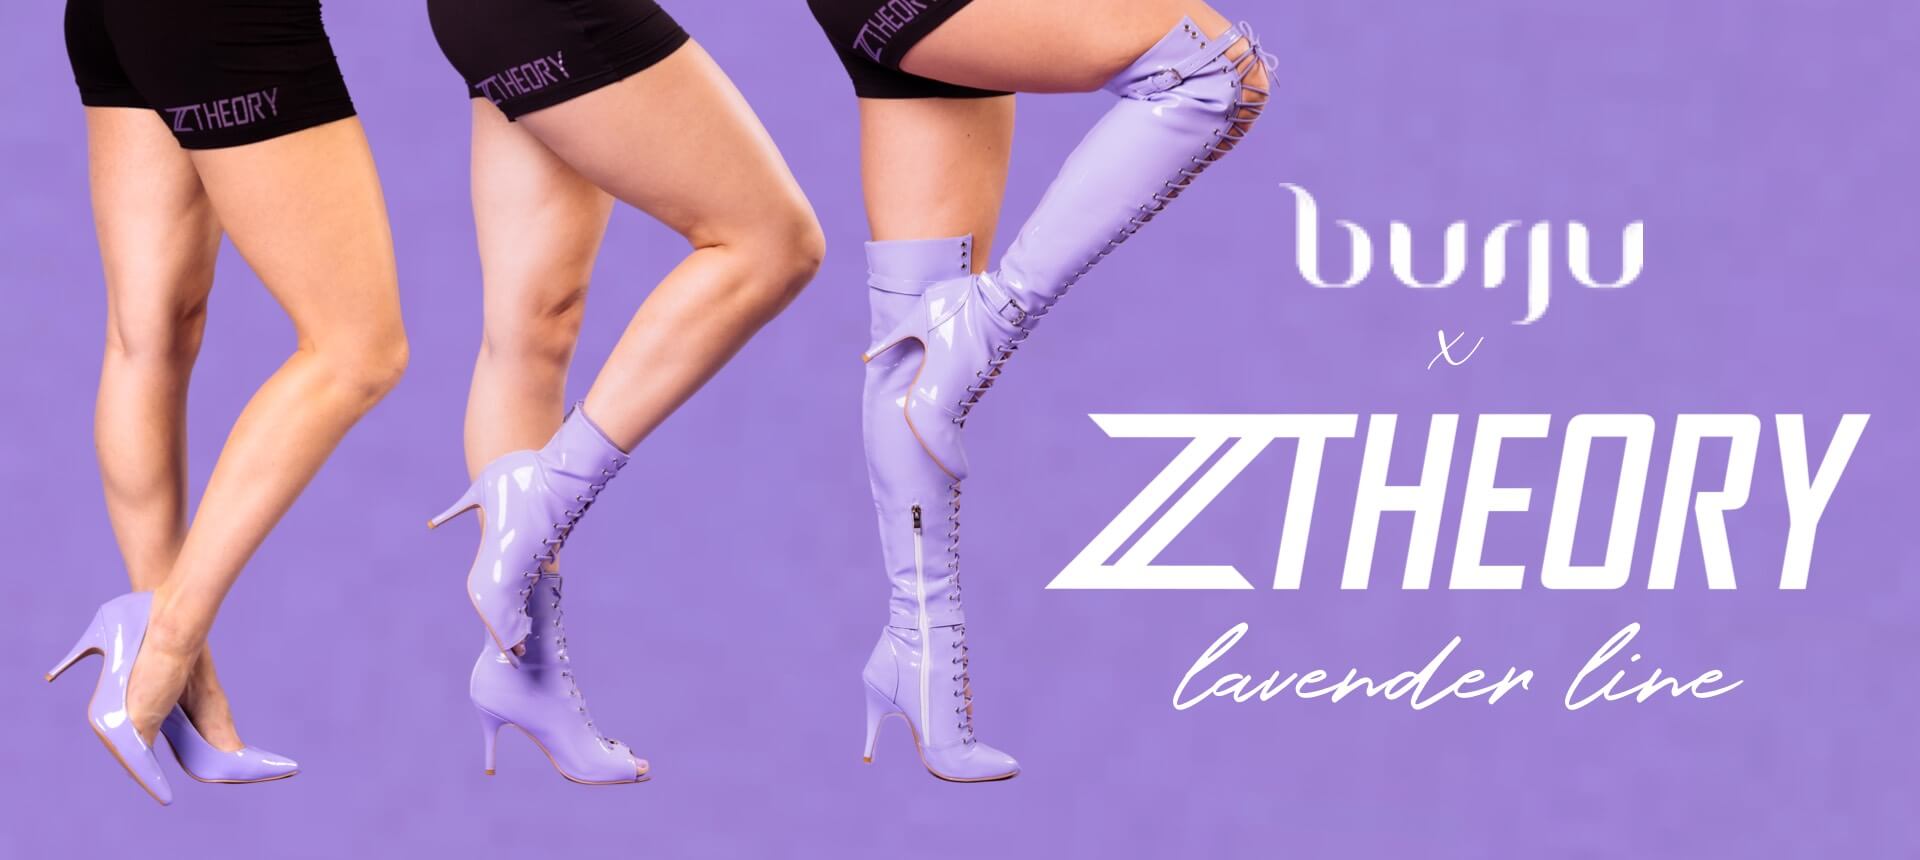 lavender-line-banner.jpeg